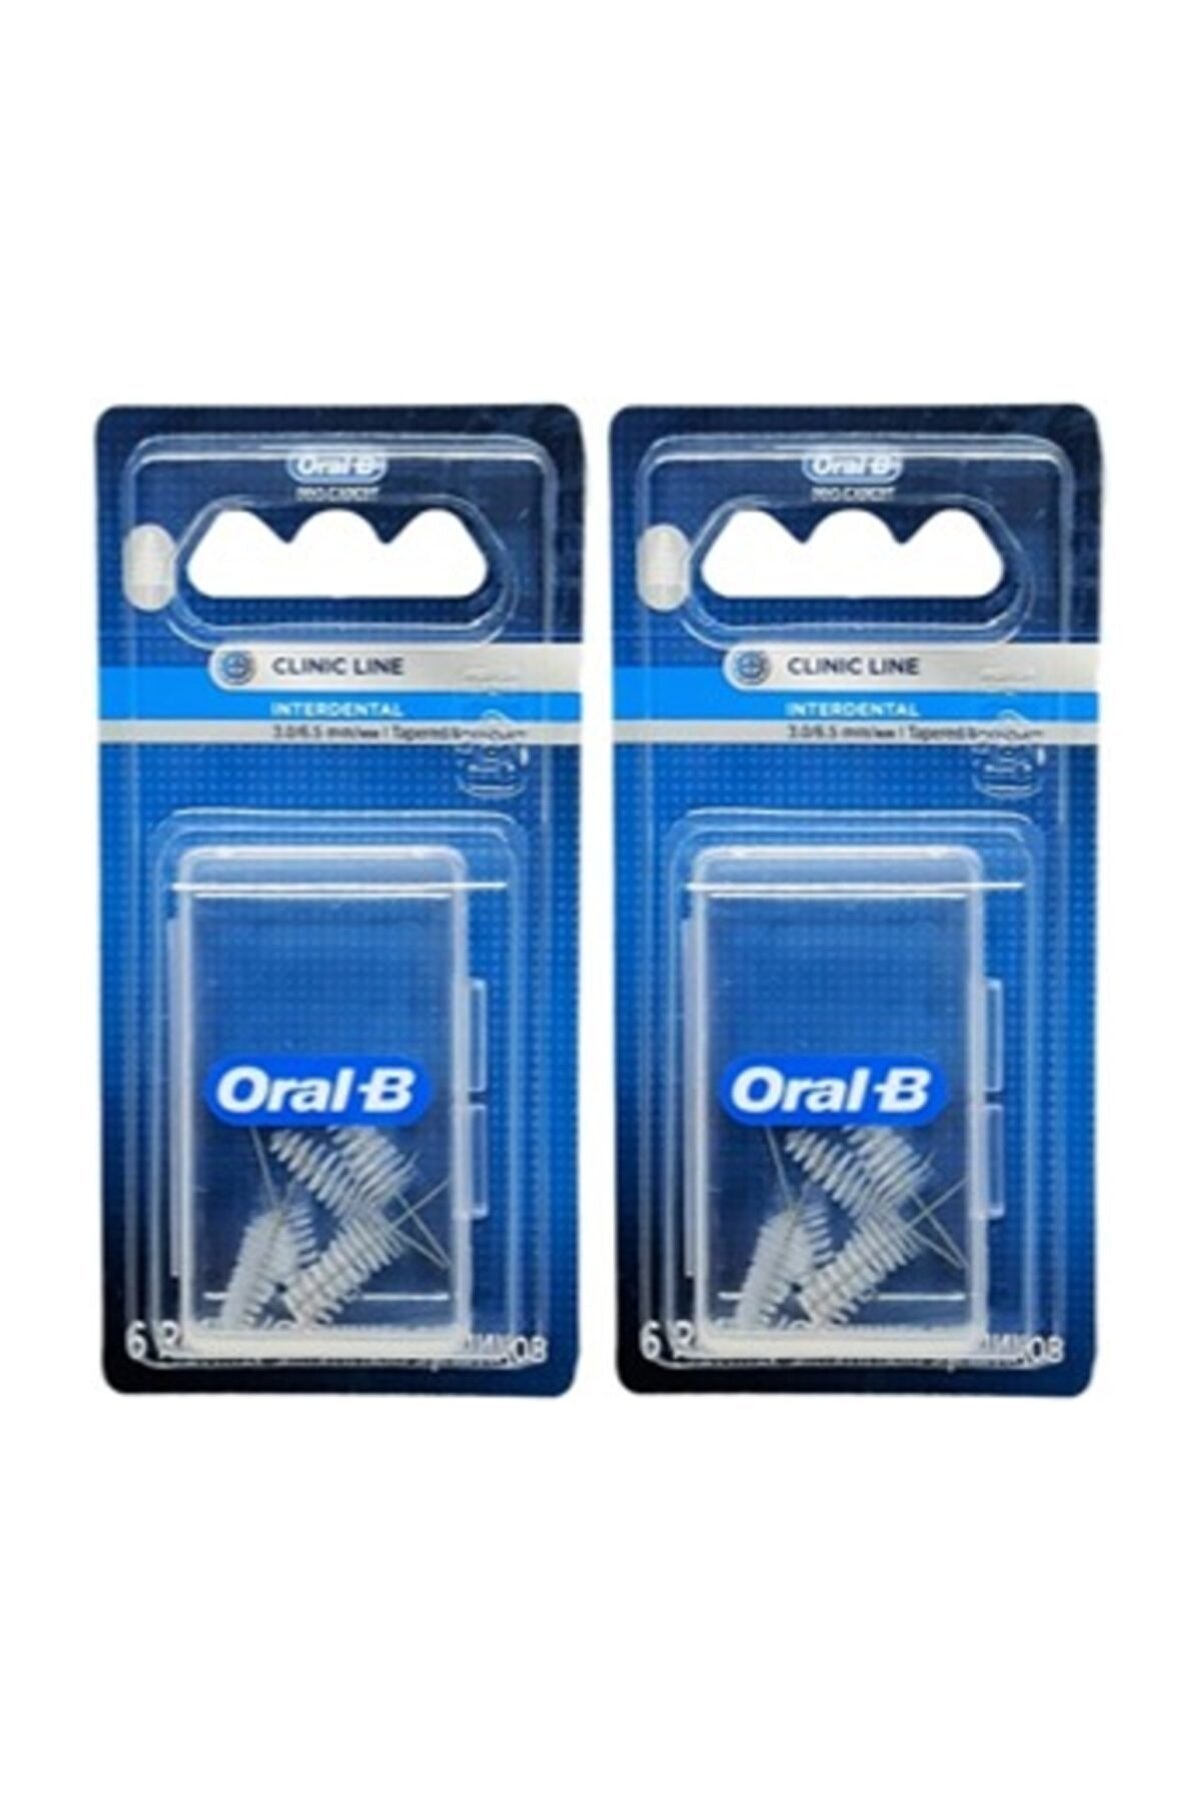 Oral-B Oral B Arayüz Fırçası Yedek Başlık Eğimli 3.0/6.5mm 6'lı X 2 Adet